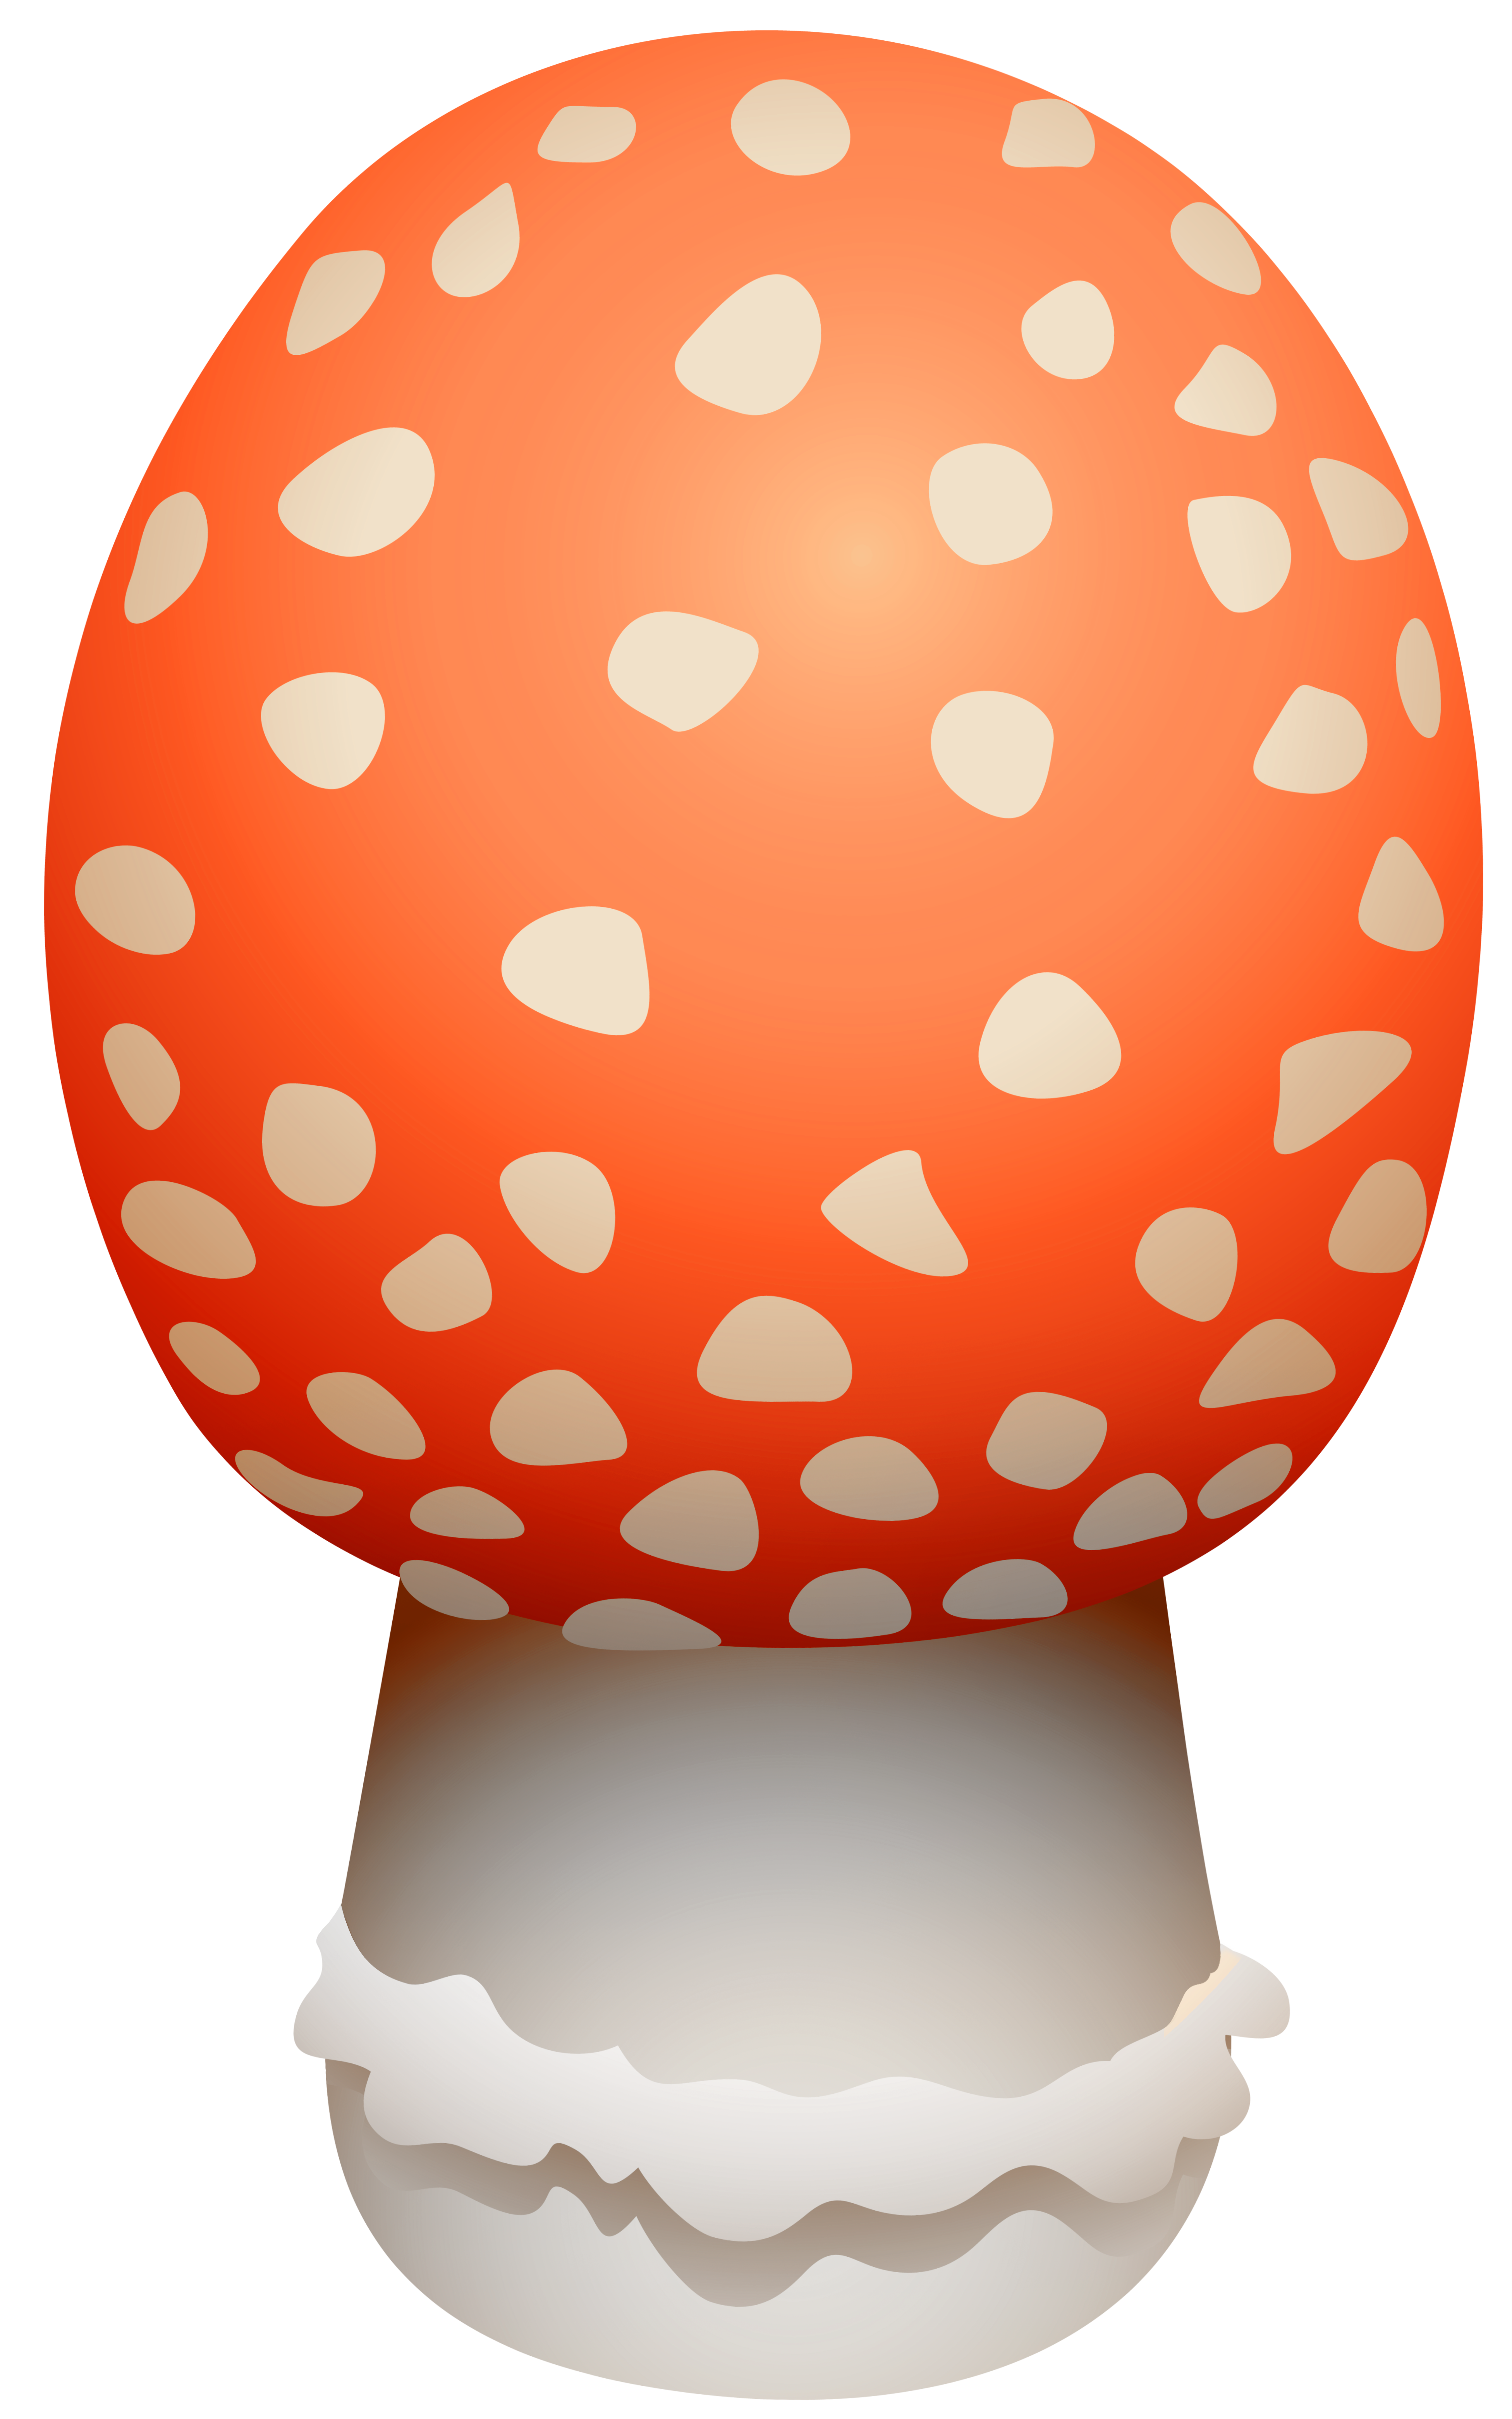 Amanita Muscaria Mushroom PNG Clipart.